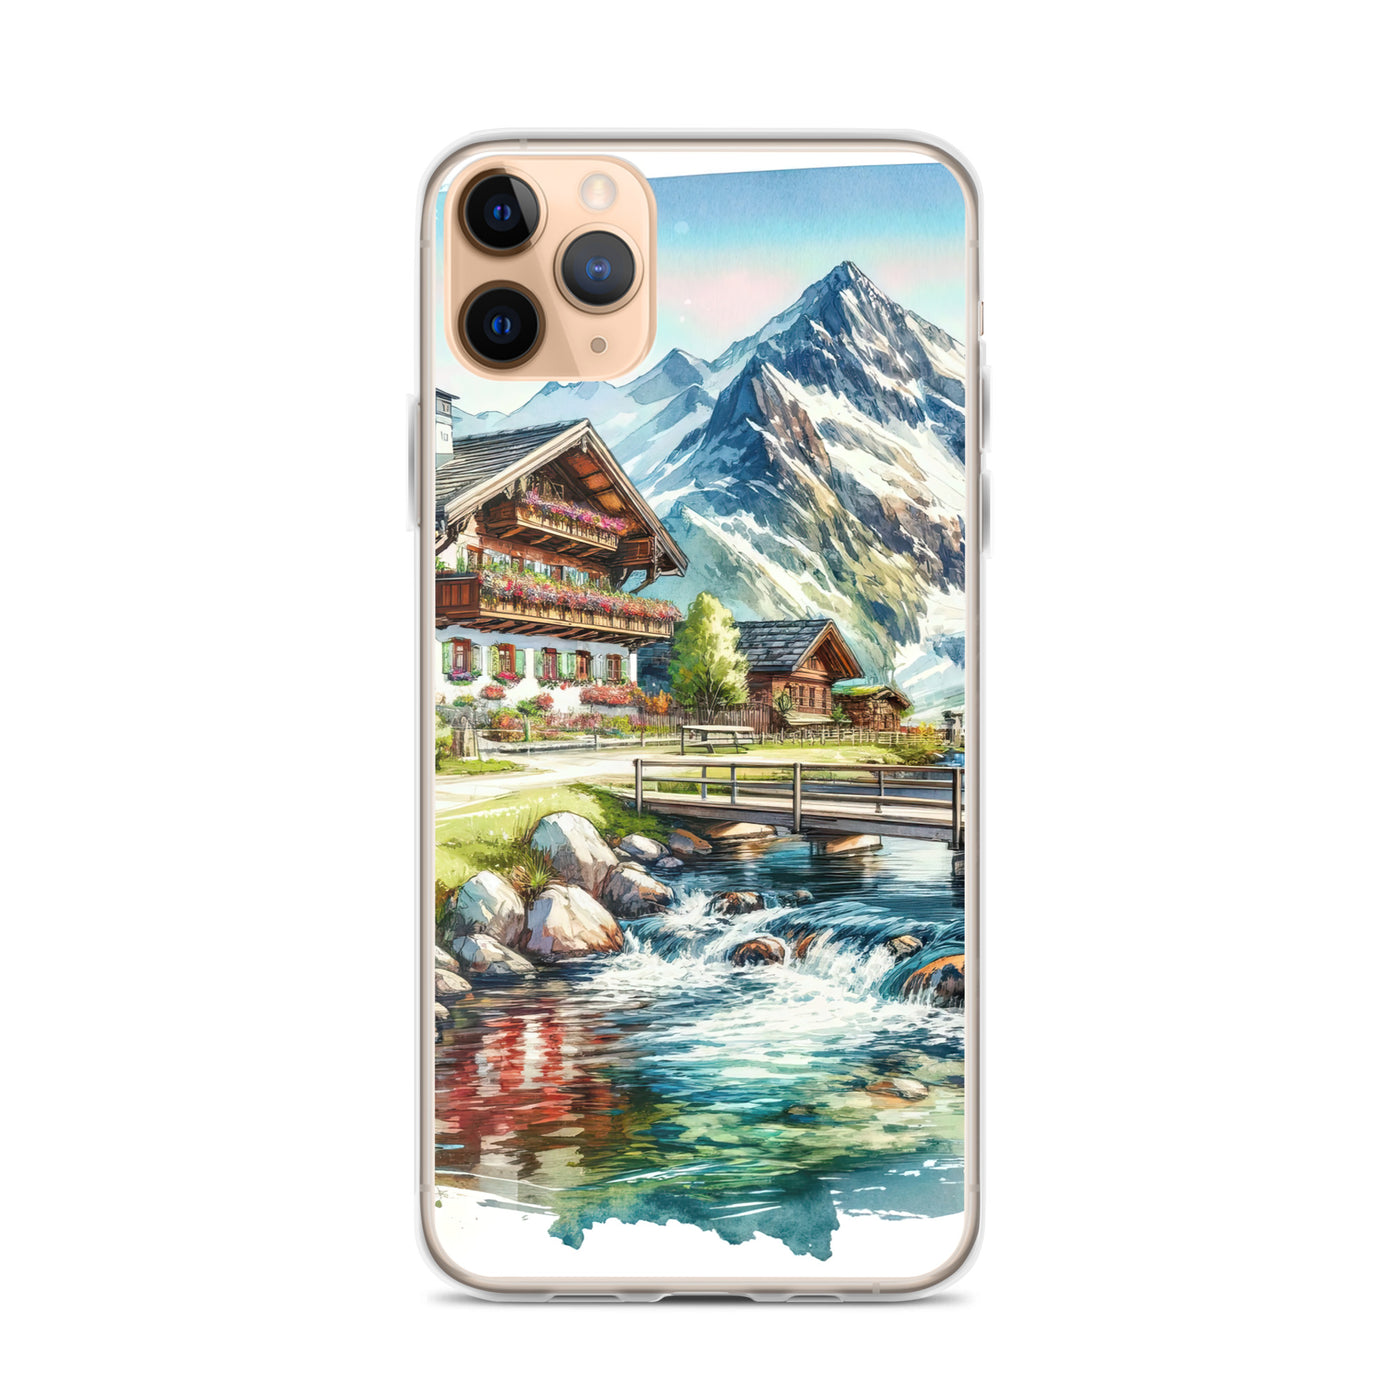 Aquarell der frühlingshaften Alpenkette mit österreichischer Flagge und schmelzendem Schnee - iPhone Schutzhülle (durchsichtig) berge xxx yyy zzz iPhone 11 Pro Max